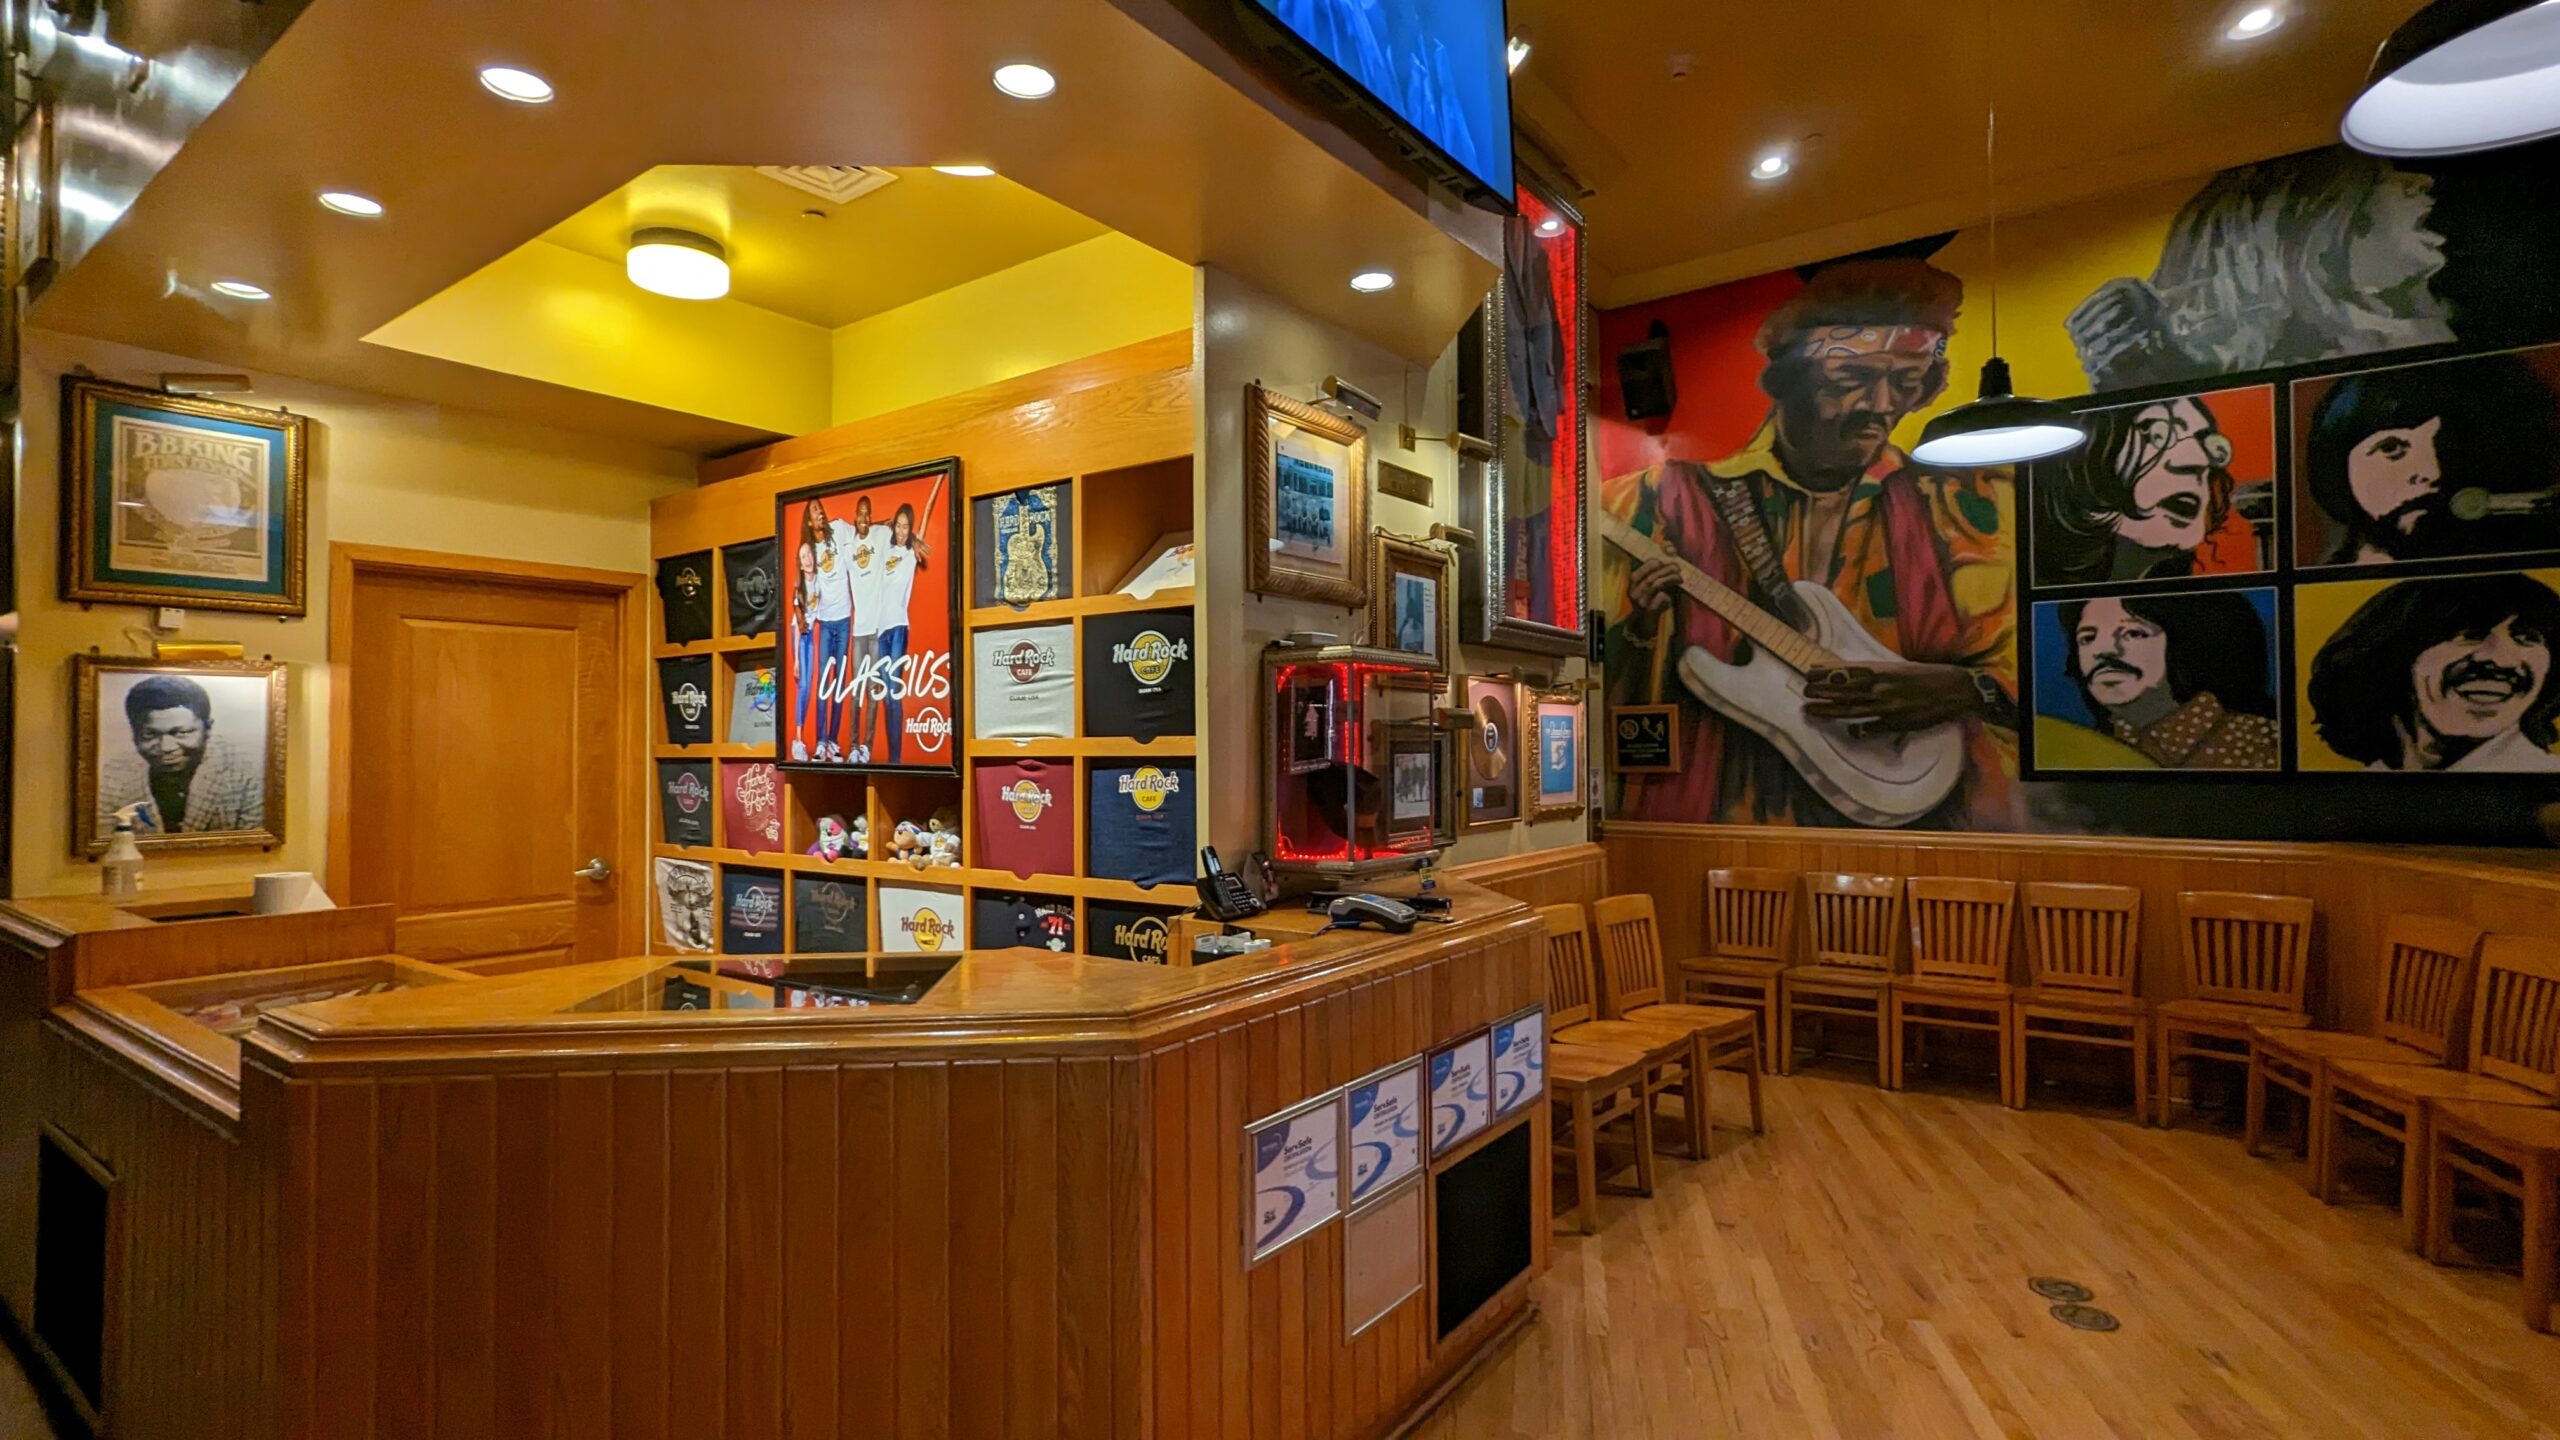 【關島美食攻略】關島必吃漢堡三選：Hard Rock Cafe 經典漢堡、Meskla Dos Burger 冠軍漢堡、Jeff’s Pirates Cove 海景漢堡